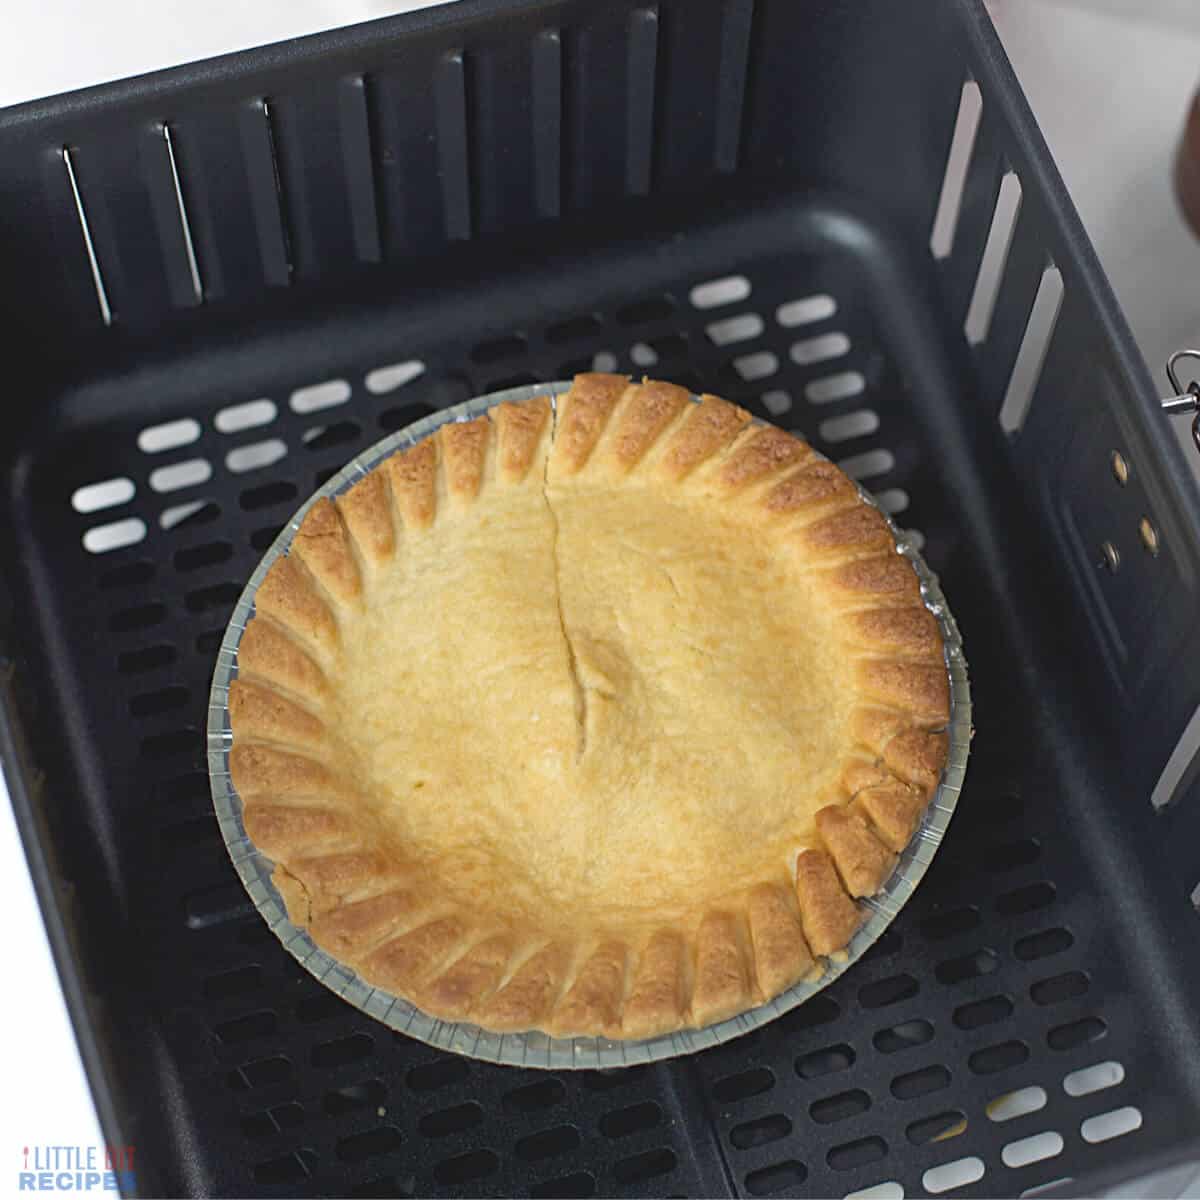 cooked pot pie in air fryer basket.